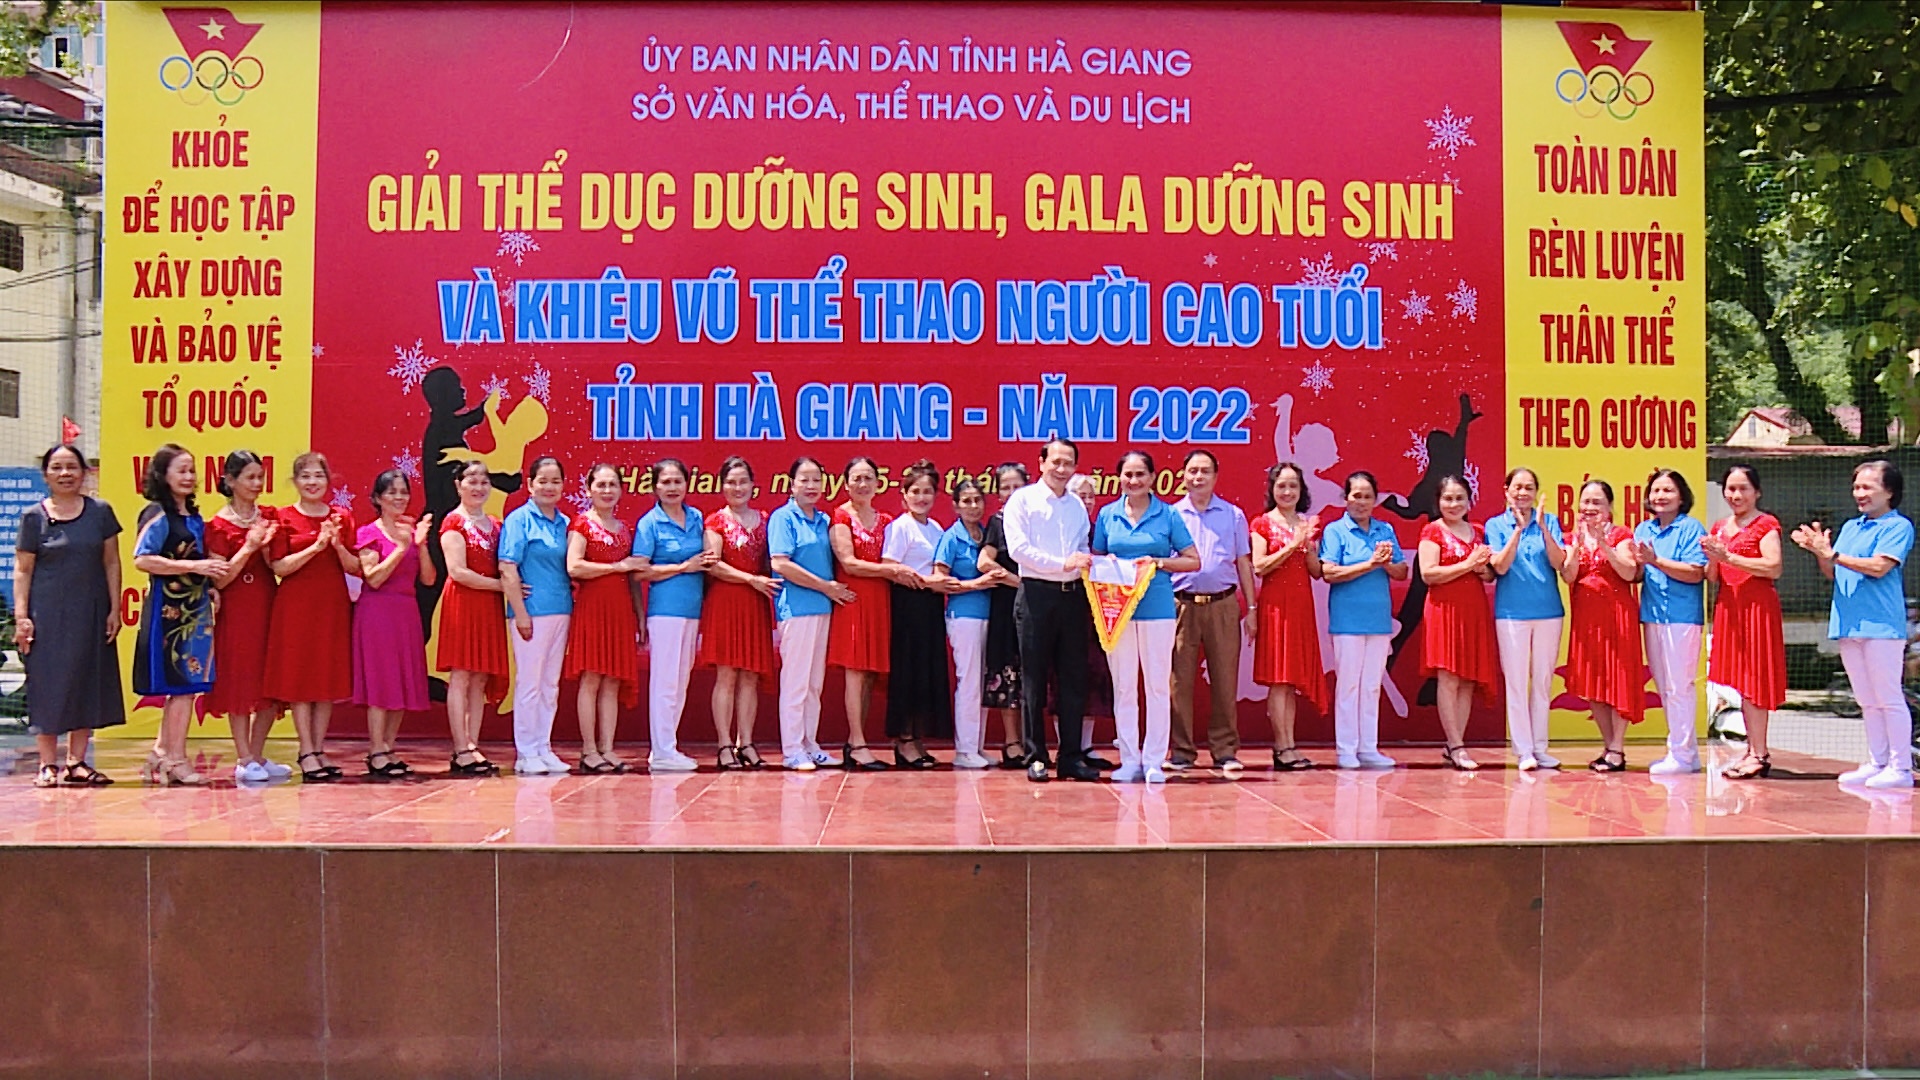 Đồng chí Trần Đức Quý, Tỉnh uỷ viên, Phó Chủ tịch UBND tỉnh trao giải Nhất nội dung gala dưỡng sinh cho đội huyện Vị Xuyên